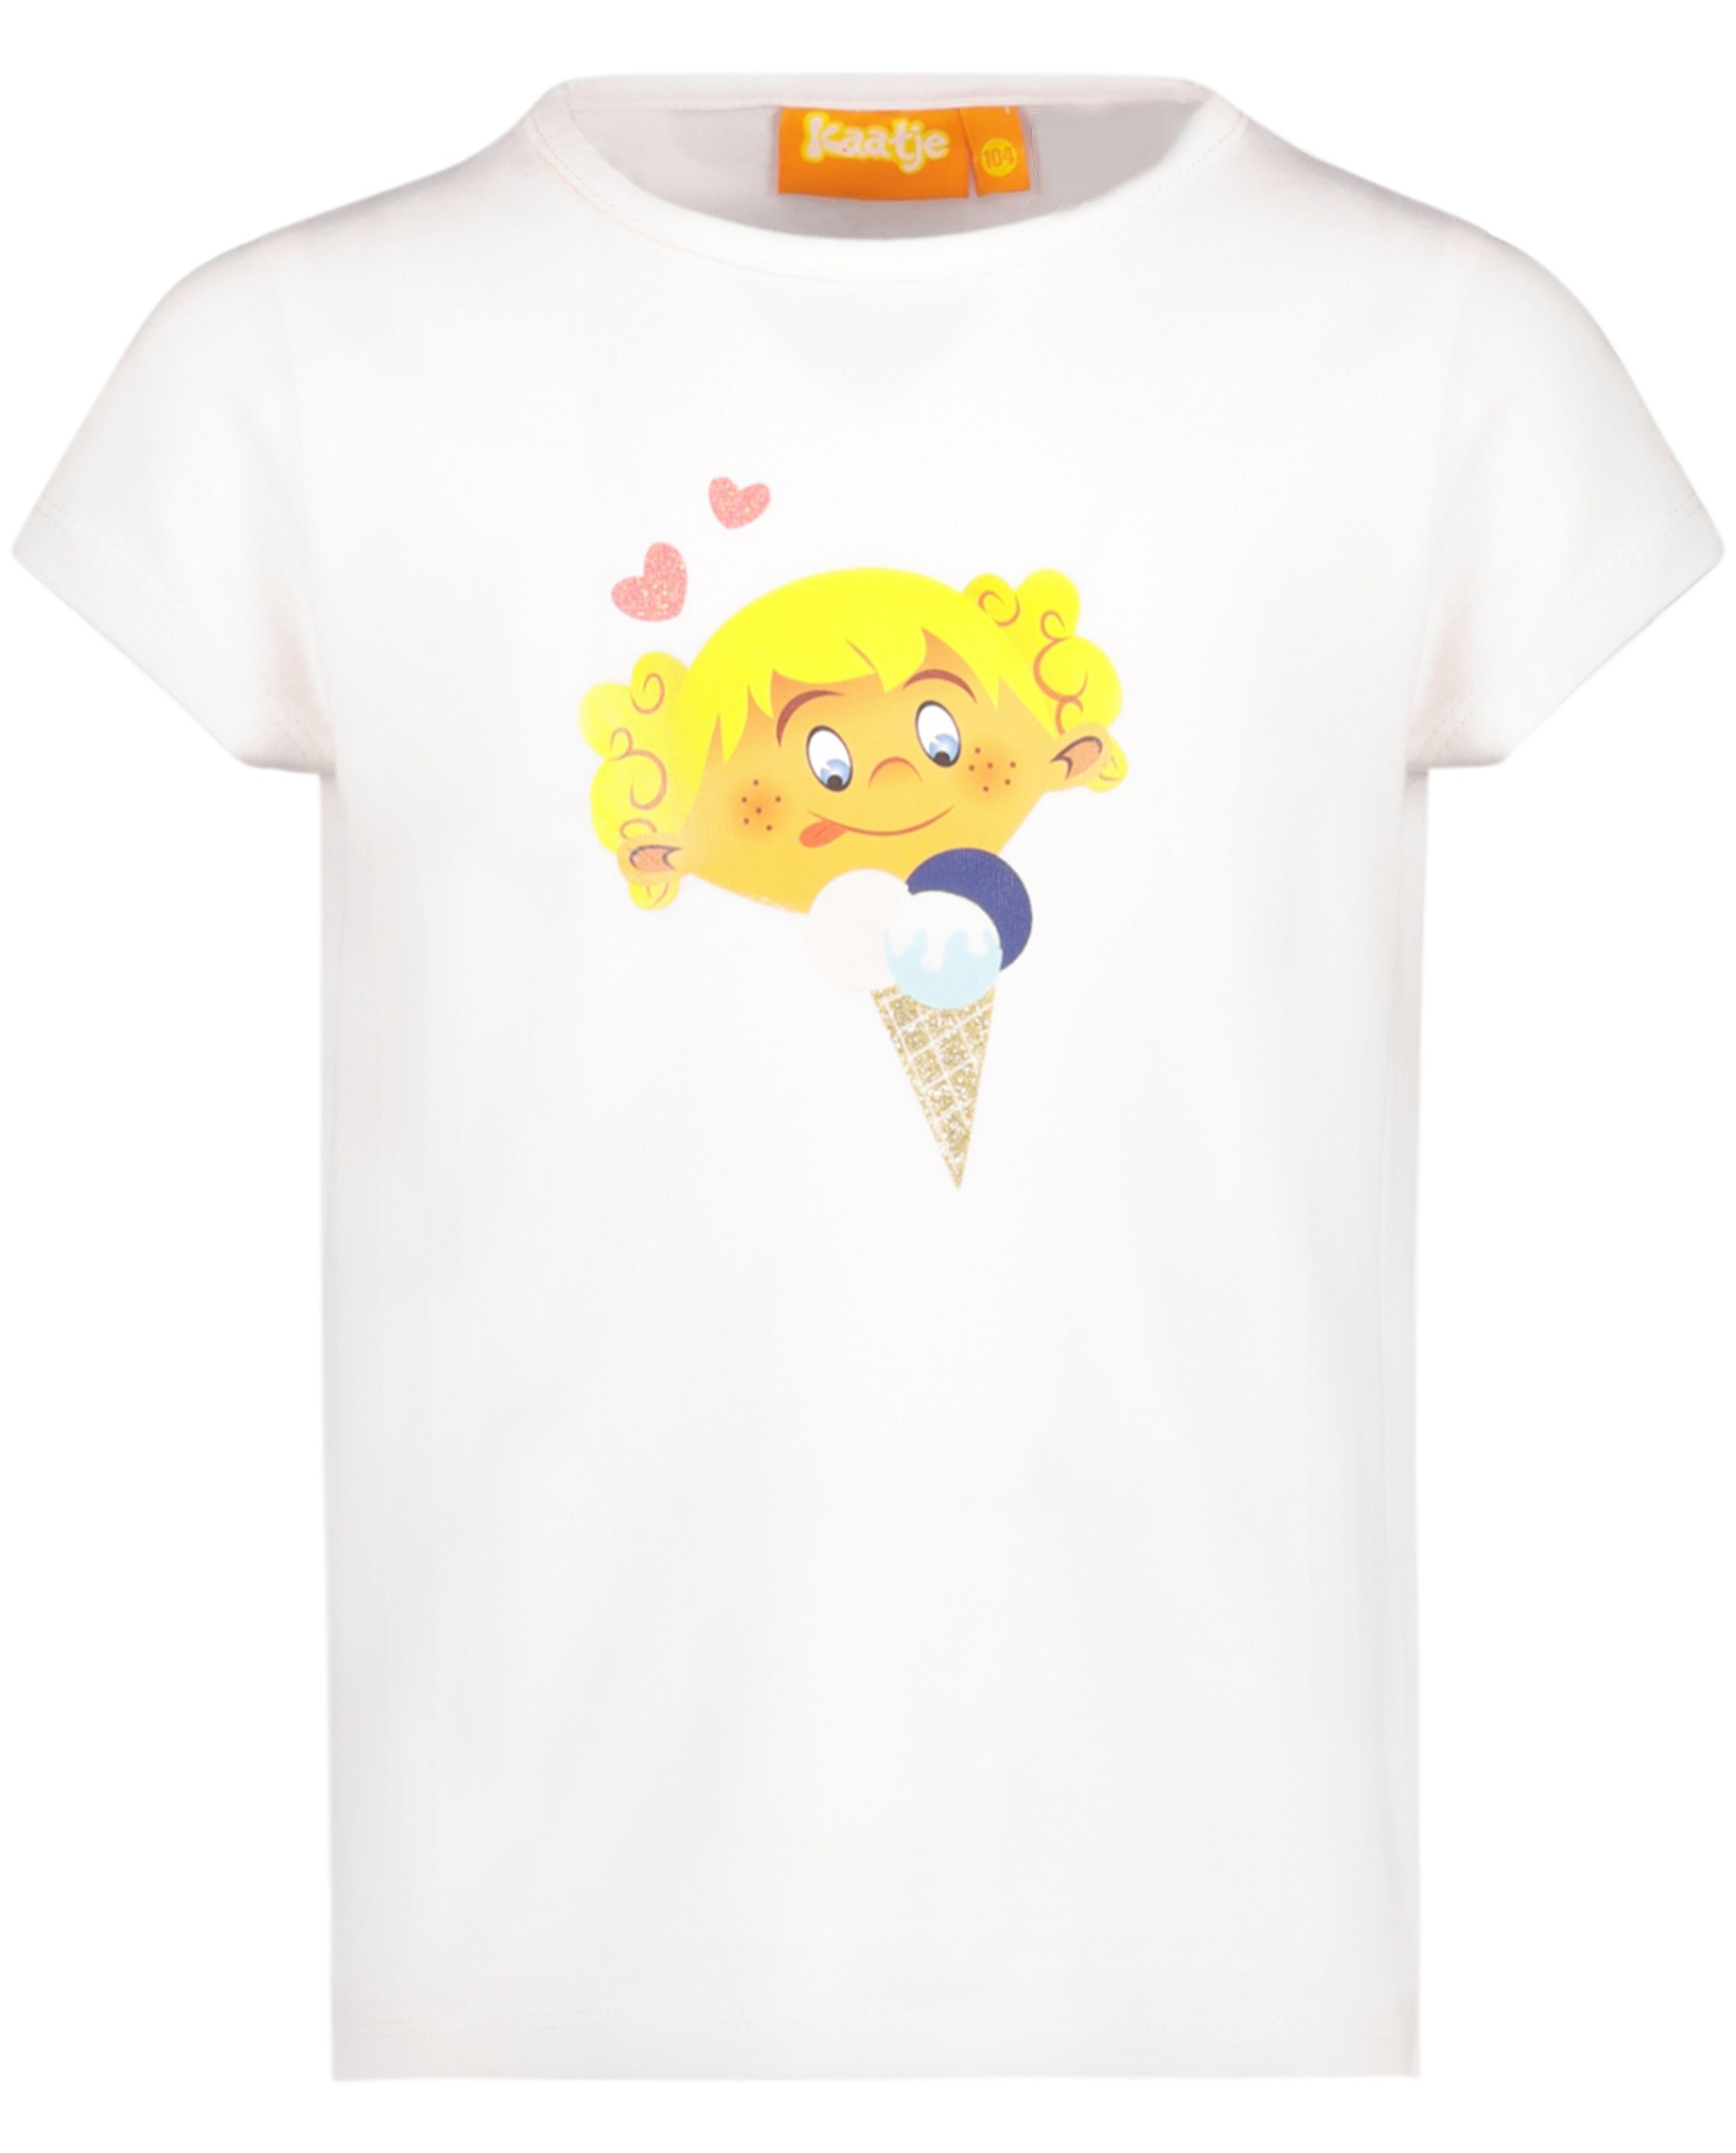 T-shirts - T-shirt crème